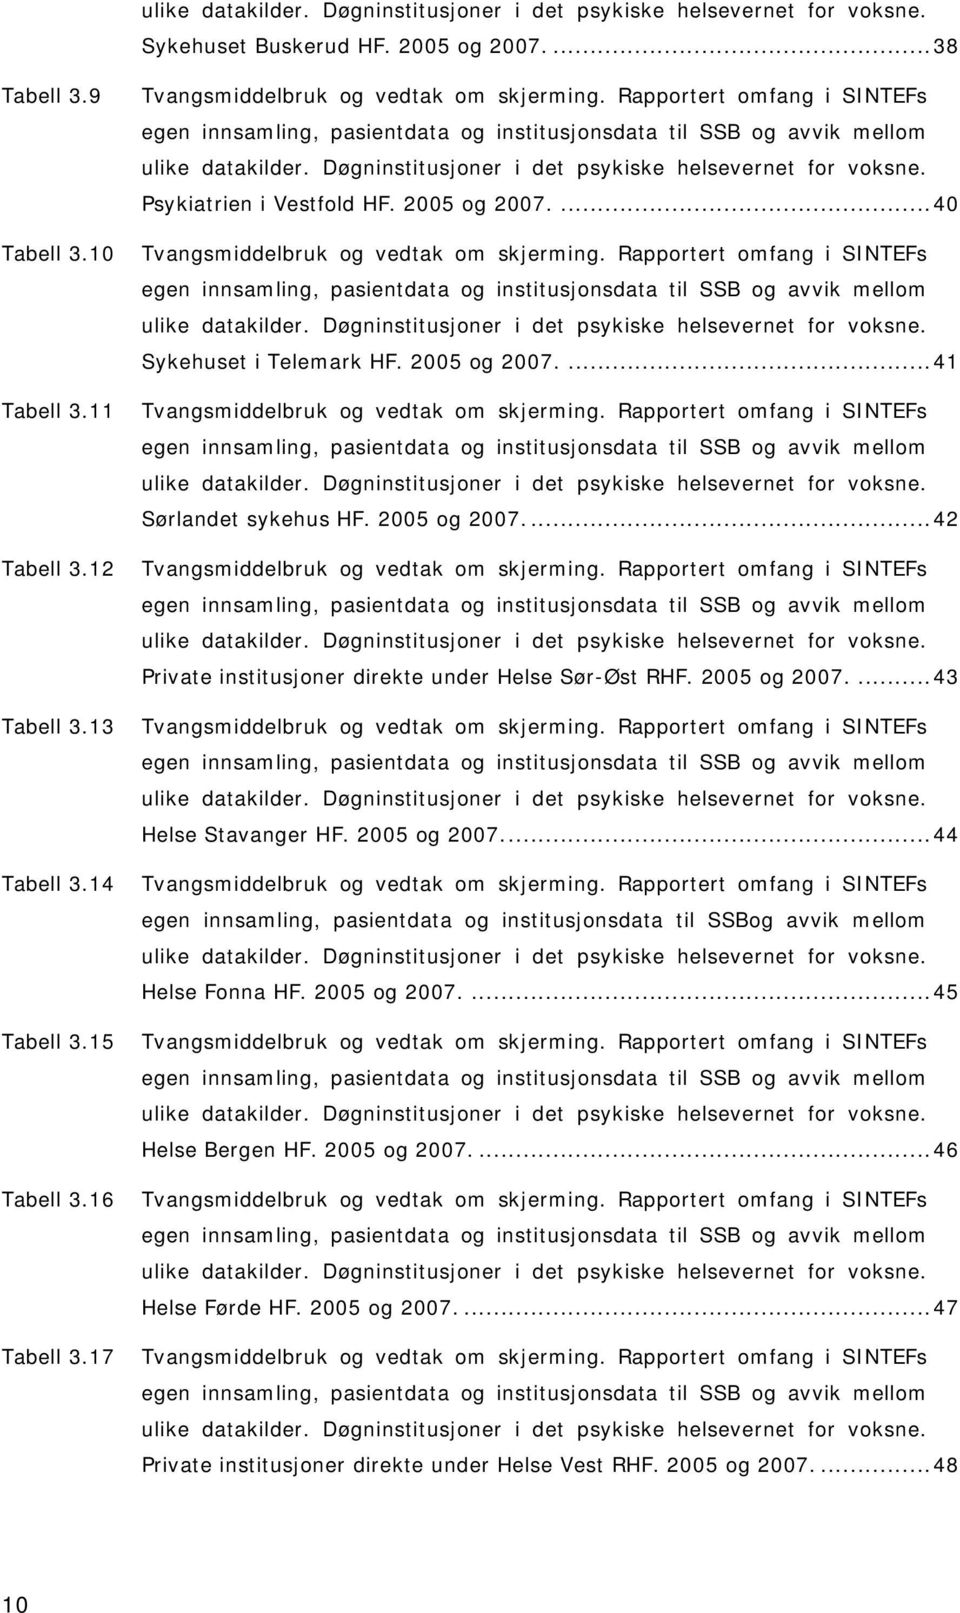 Psykiatrien i Vestfold HF. 2005 og 2007....40 Tabell 3.10 Tvangsmiddelbruk og vedtak om skjerming.  Sykehuset i Telemark HF. 2005 og 2007....41 Tabell 3.11 Tvangsmiddelbruk og vedtak om skjerming.